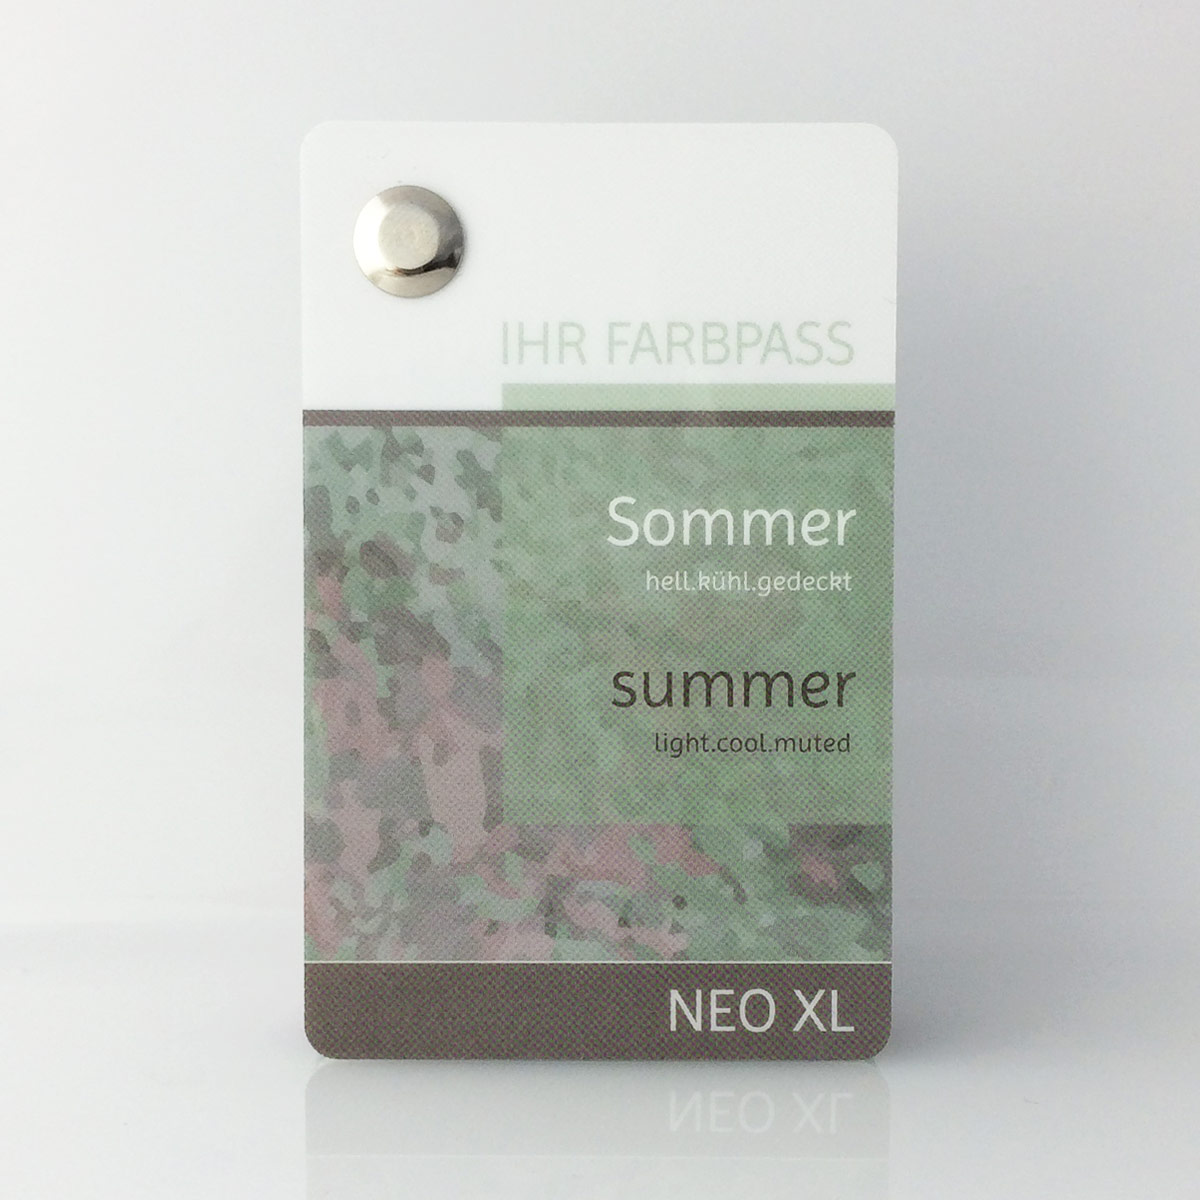 Farbpass Sommertyp zur Farbberatung - Neo XL | Komood